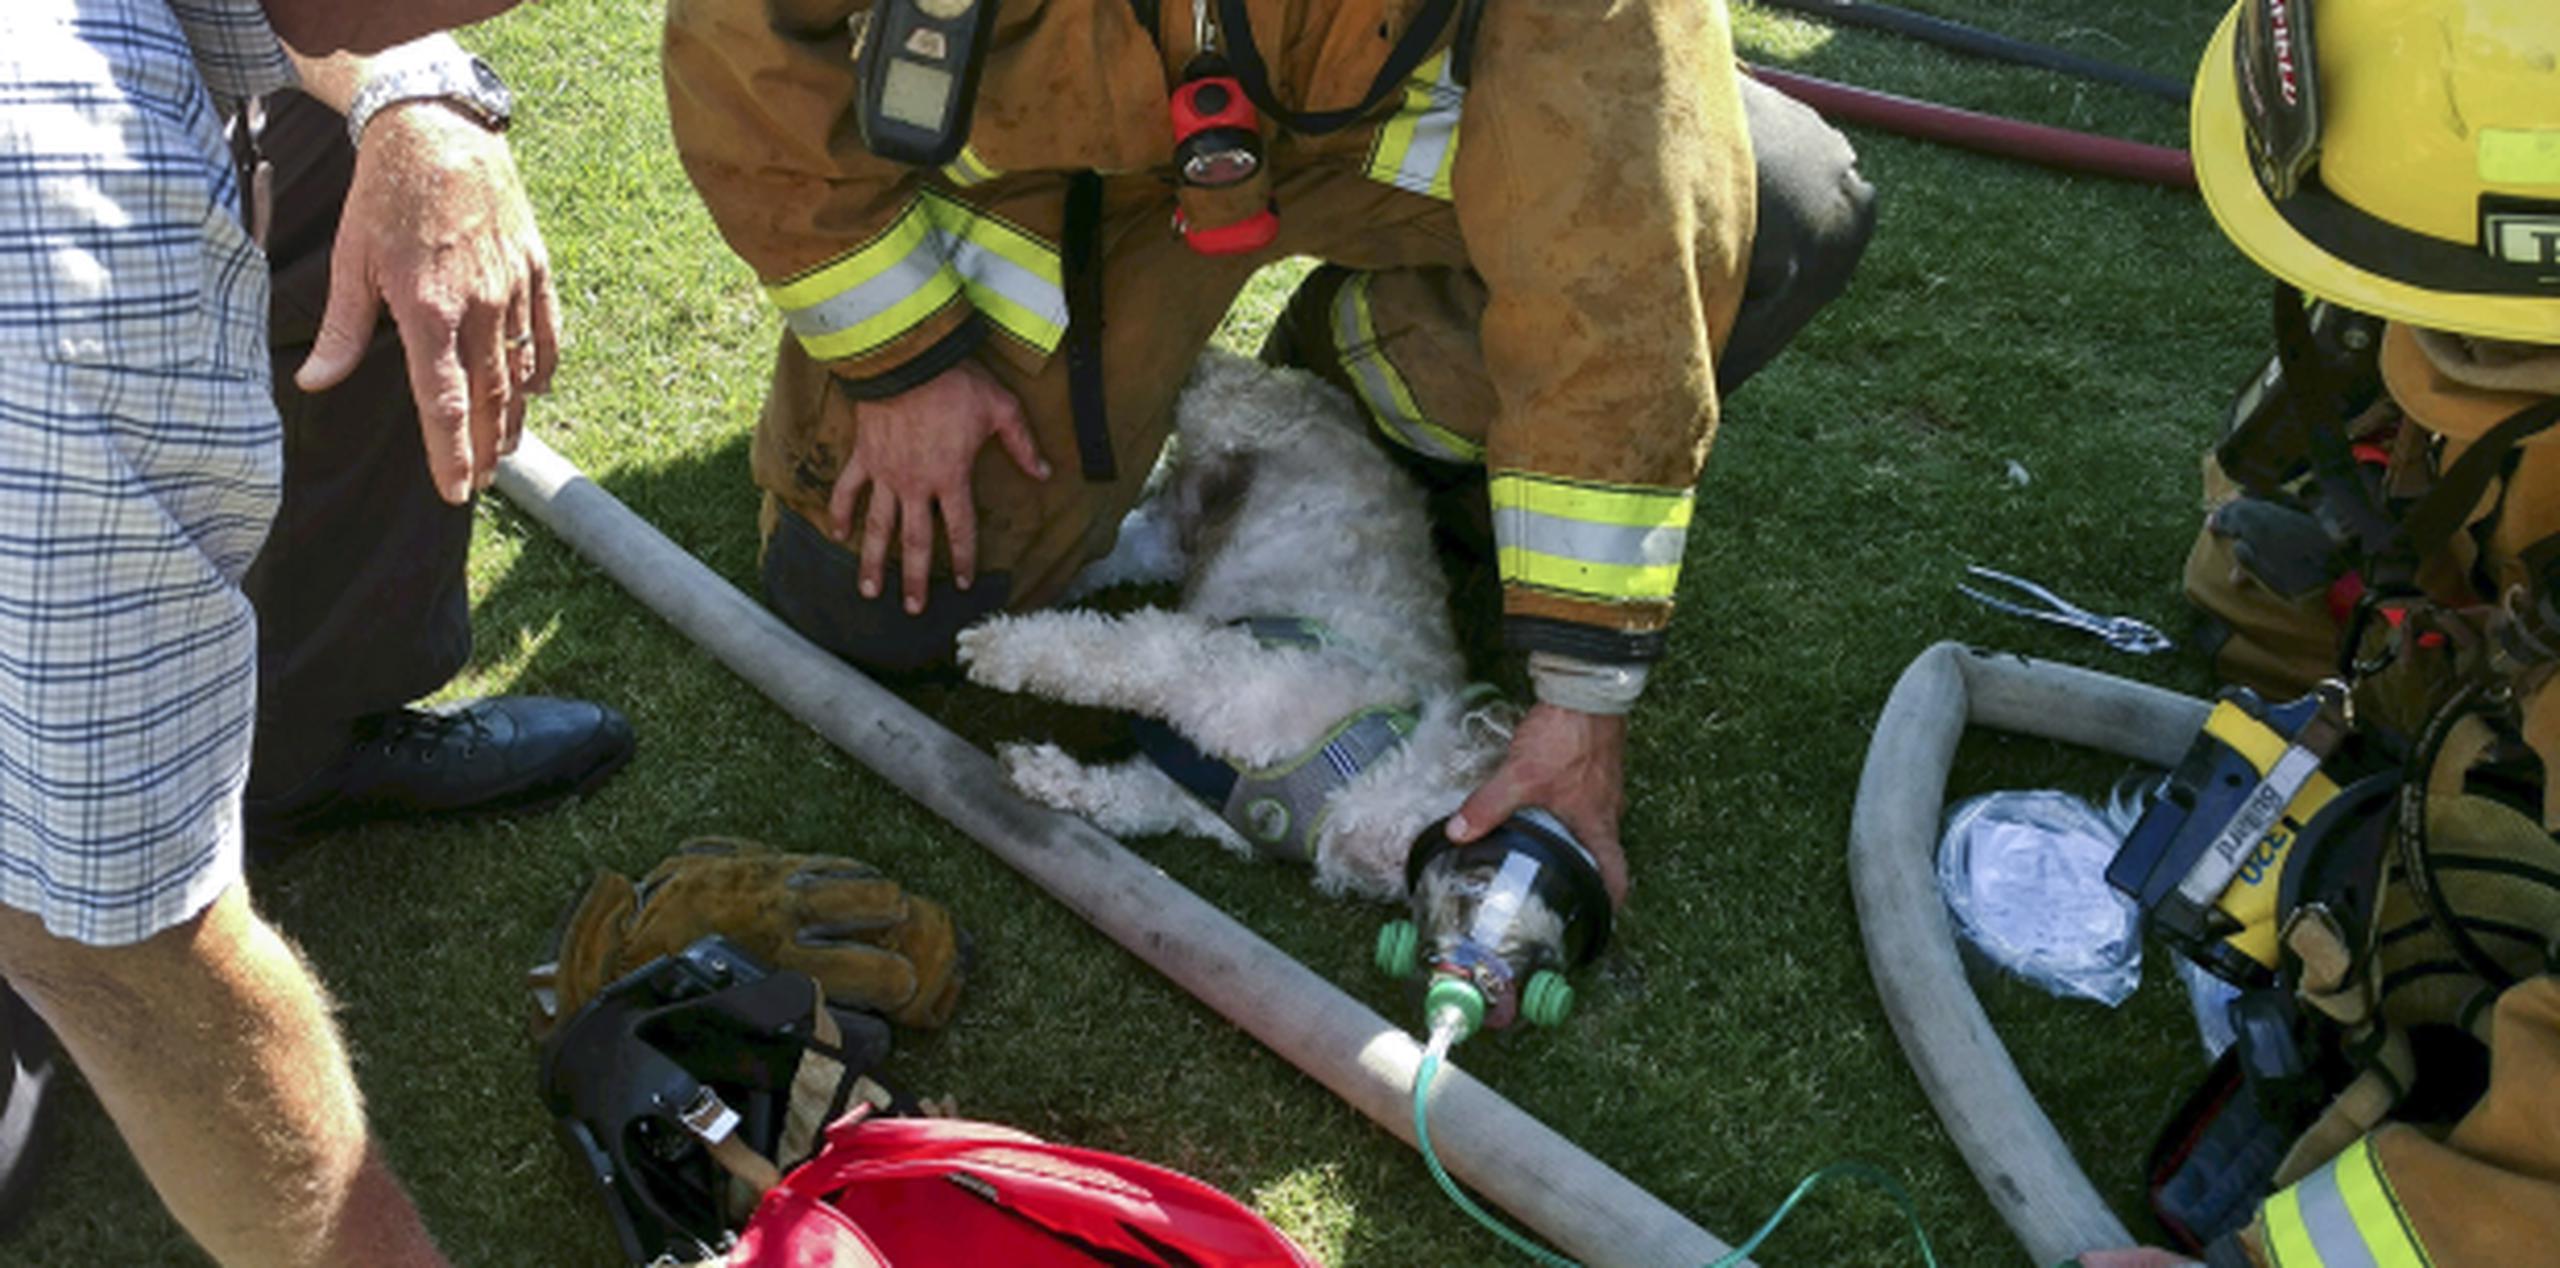 Jack volvió a la vida luego de que le colocaran una máscara de oxígeno para mascotas donada al departamento por un grupo local de Niñas Exploradoras. (John Frando / Departamento de Bomberos de Bakersfield vía AP)